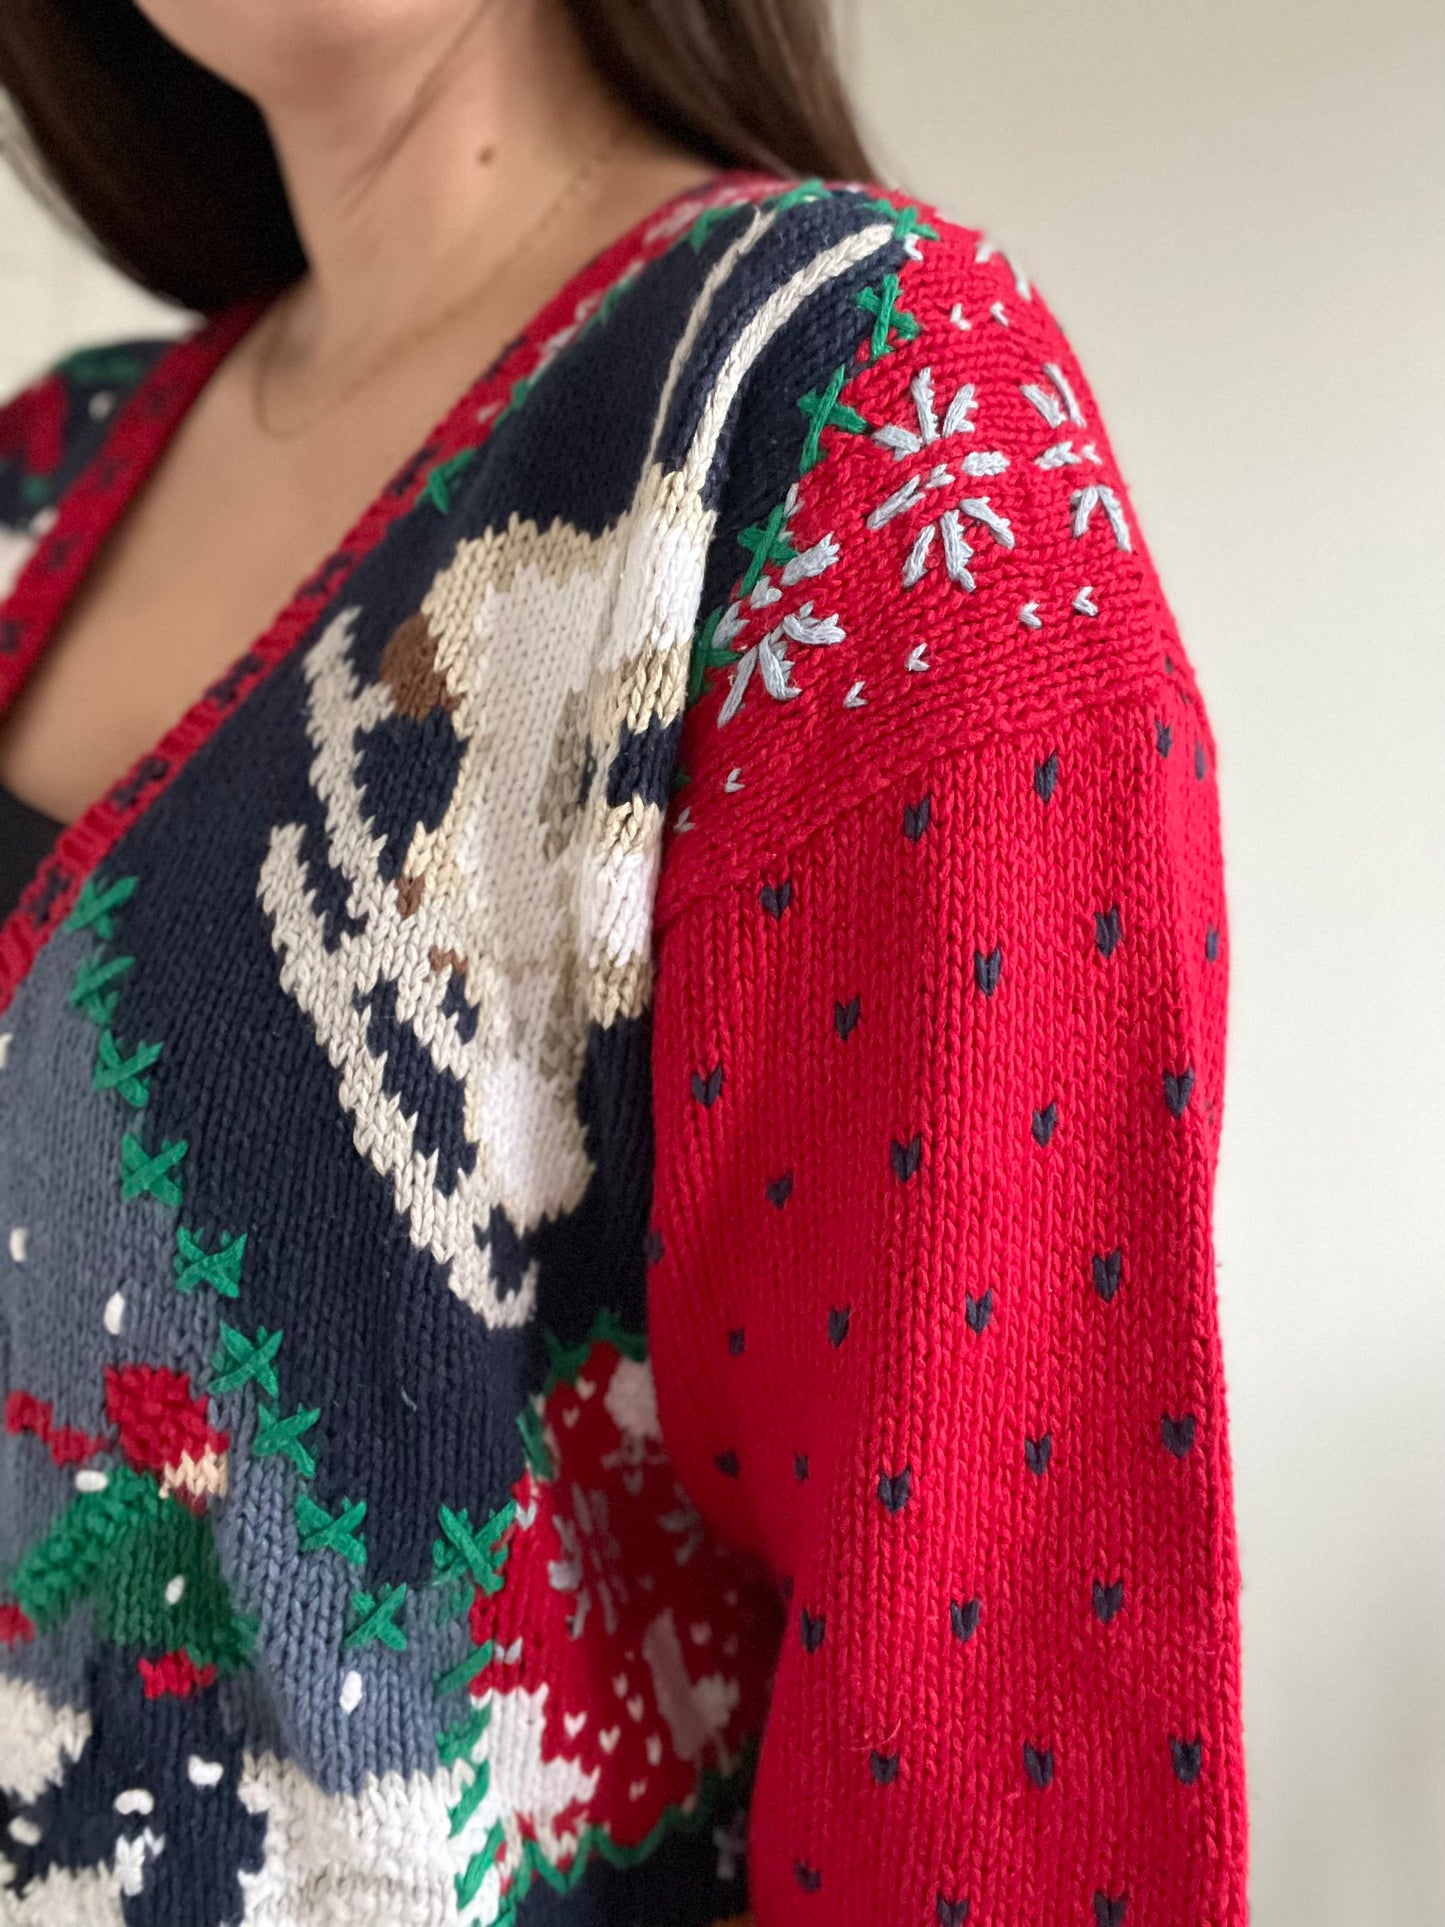 Let it Snow Knit Sweater - M/L